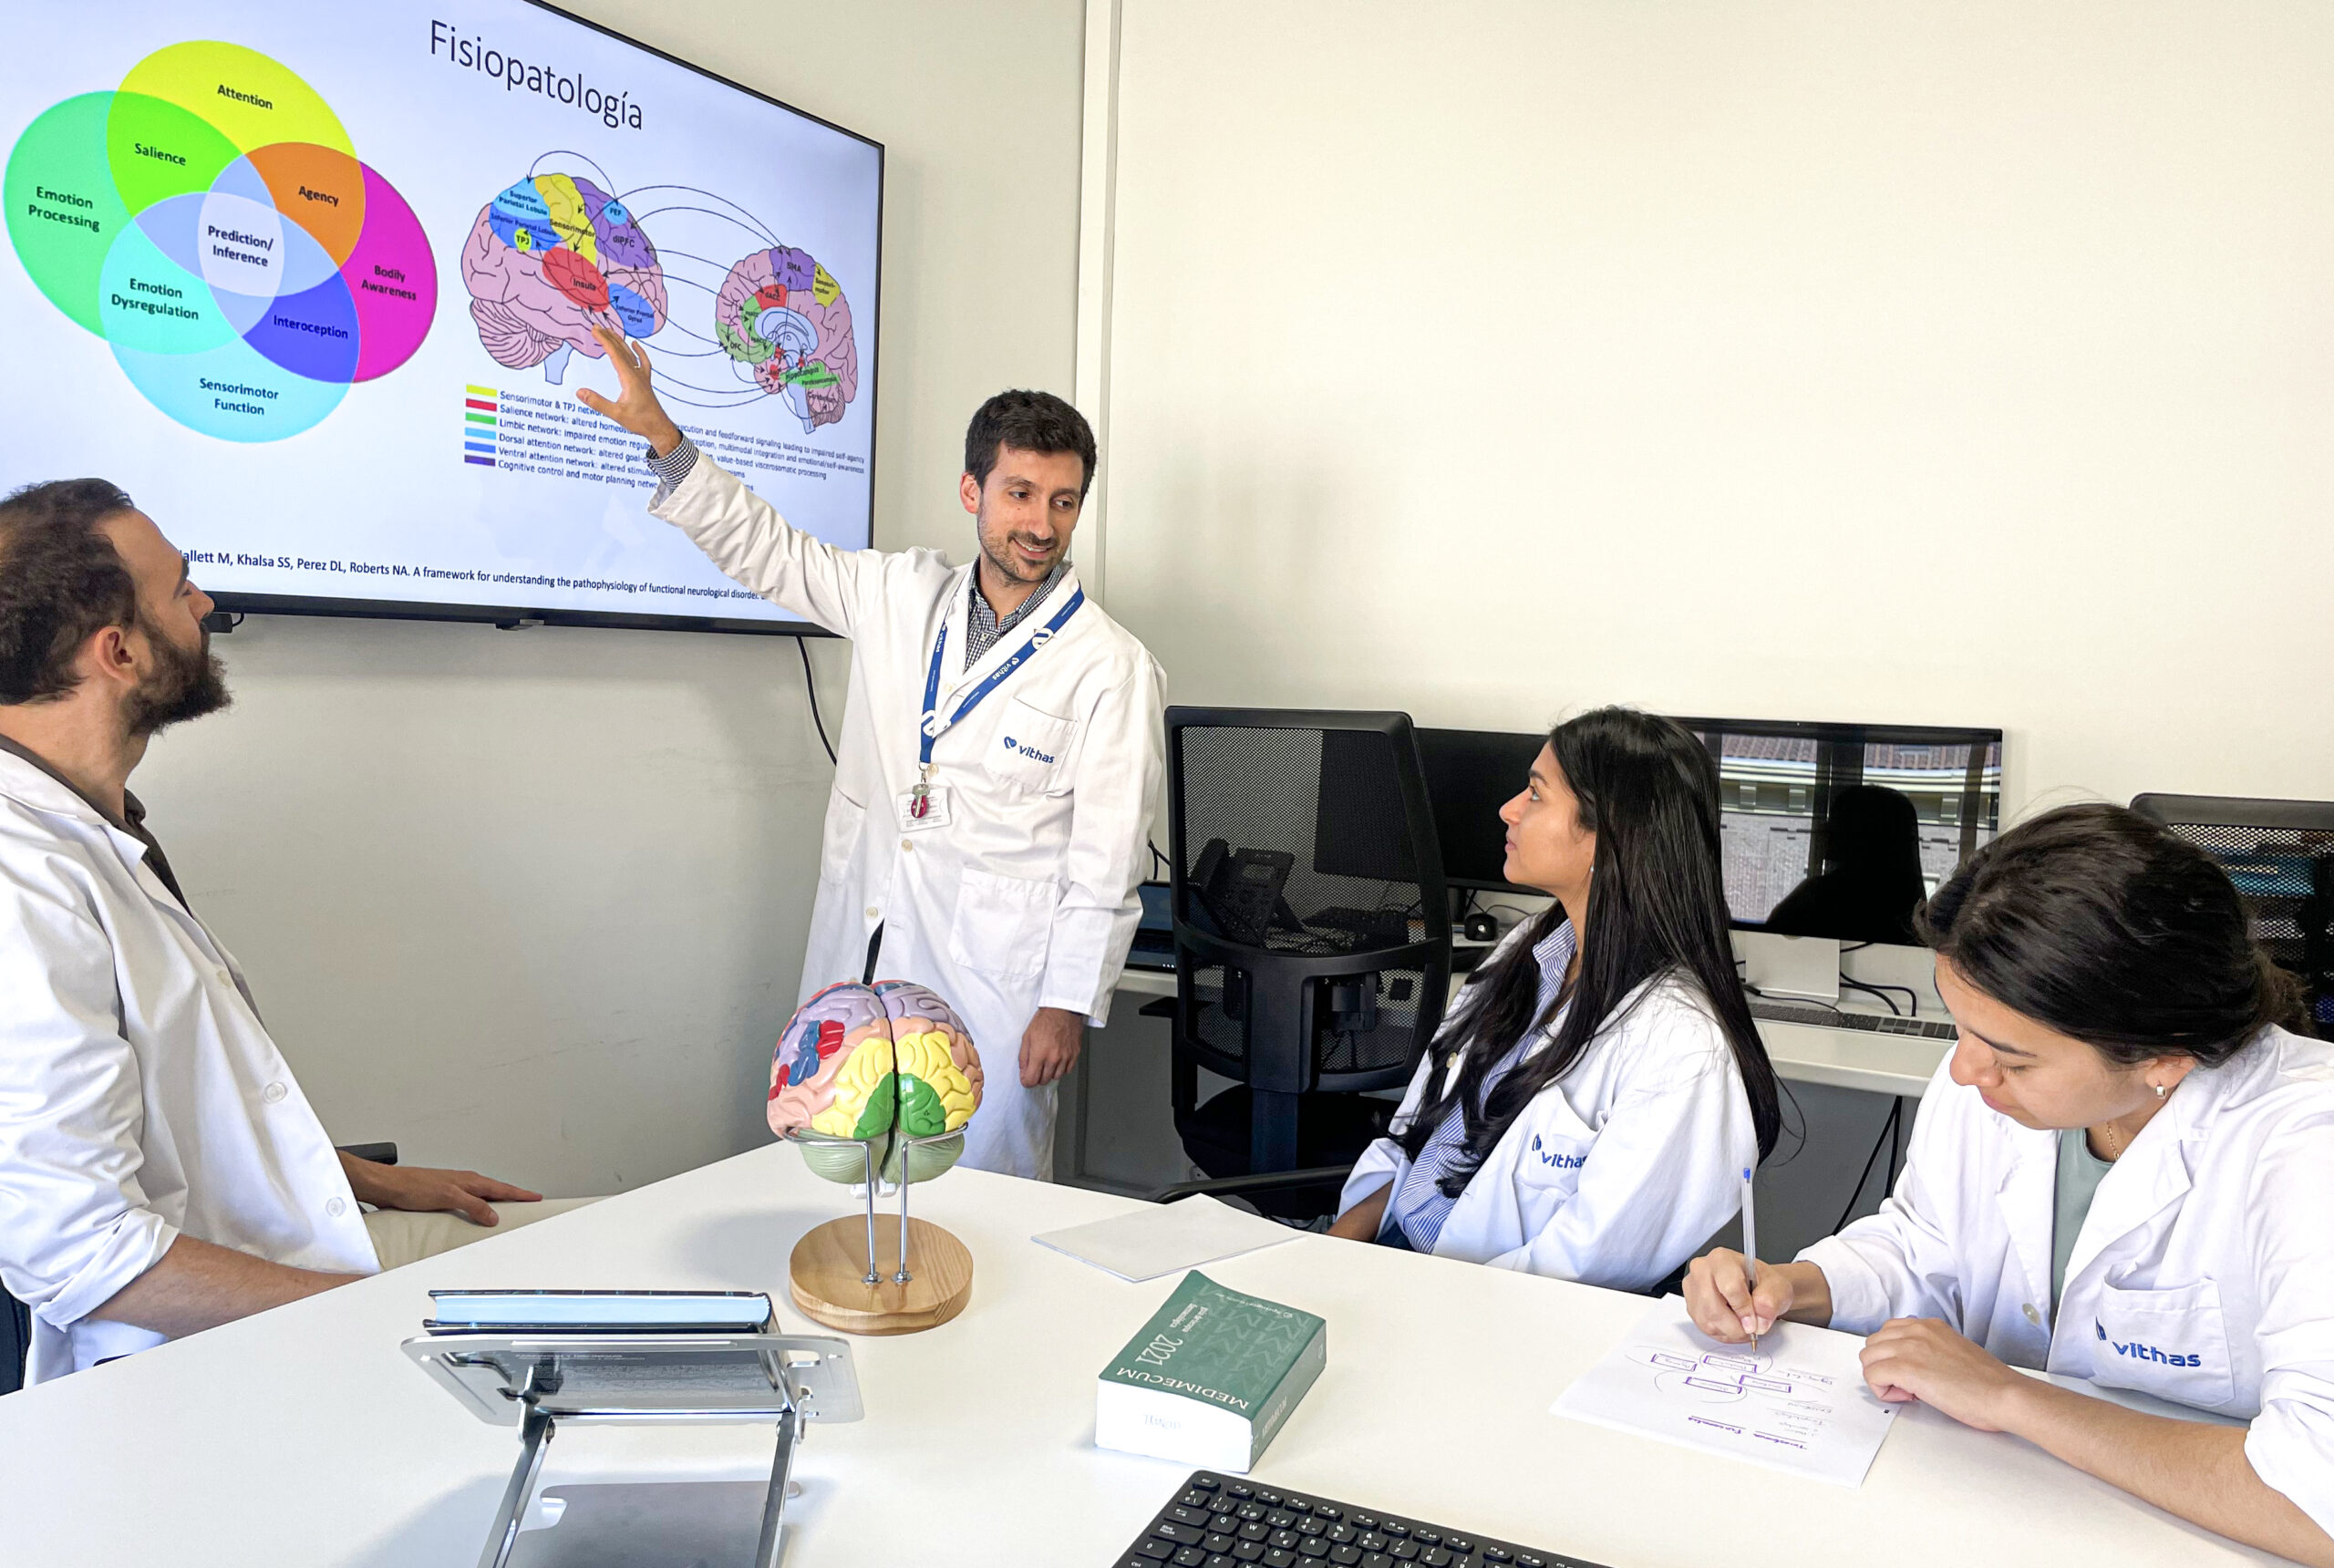 El Instituto de Neurociencias Vithas en Madrid impulsa el primer programa formativo en trastornos neurológicos funcionales